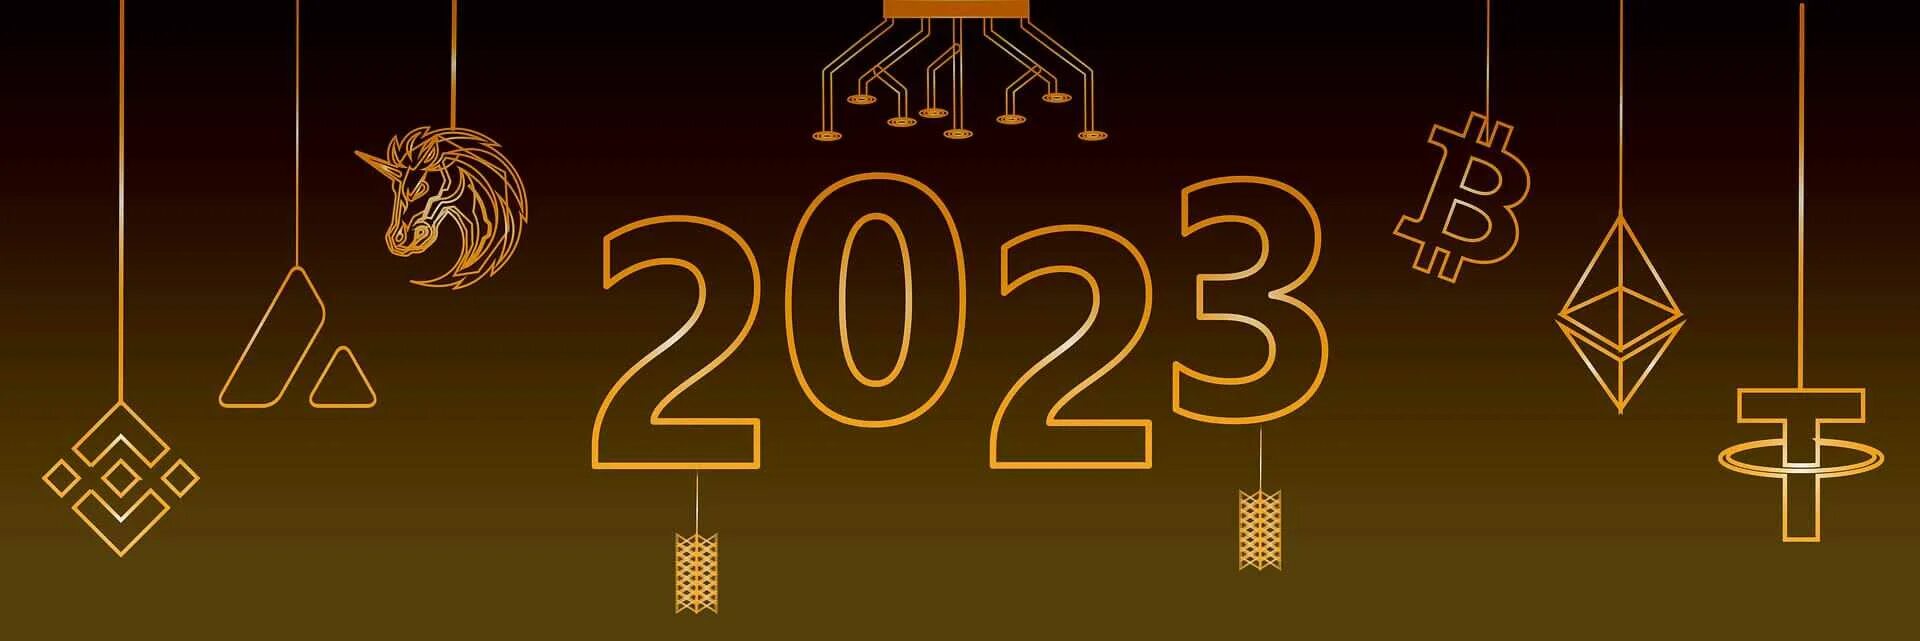 Картинки велком 2023. Обои на компьютер Welcome 2023. Welcome 2023 years. Welcome 2023. Welcoming 2023